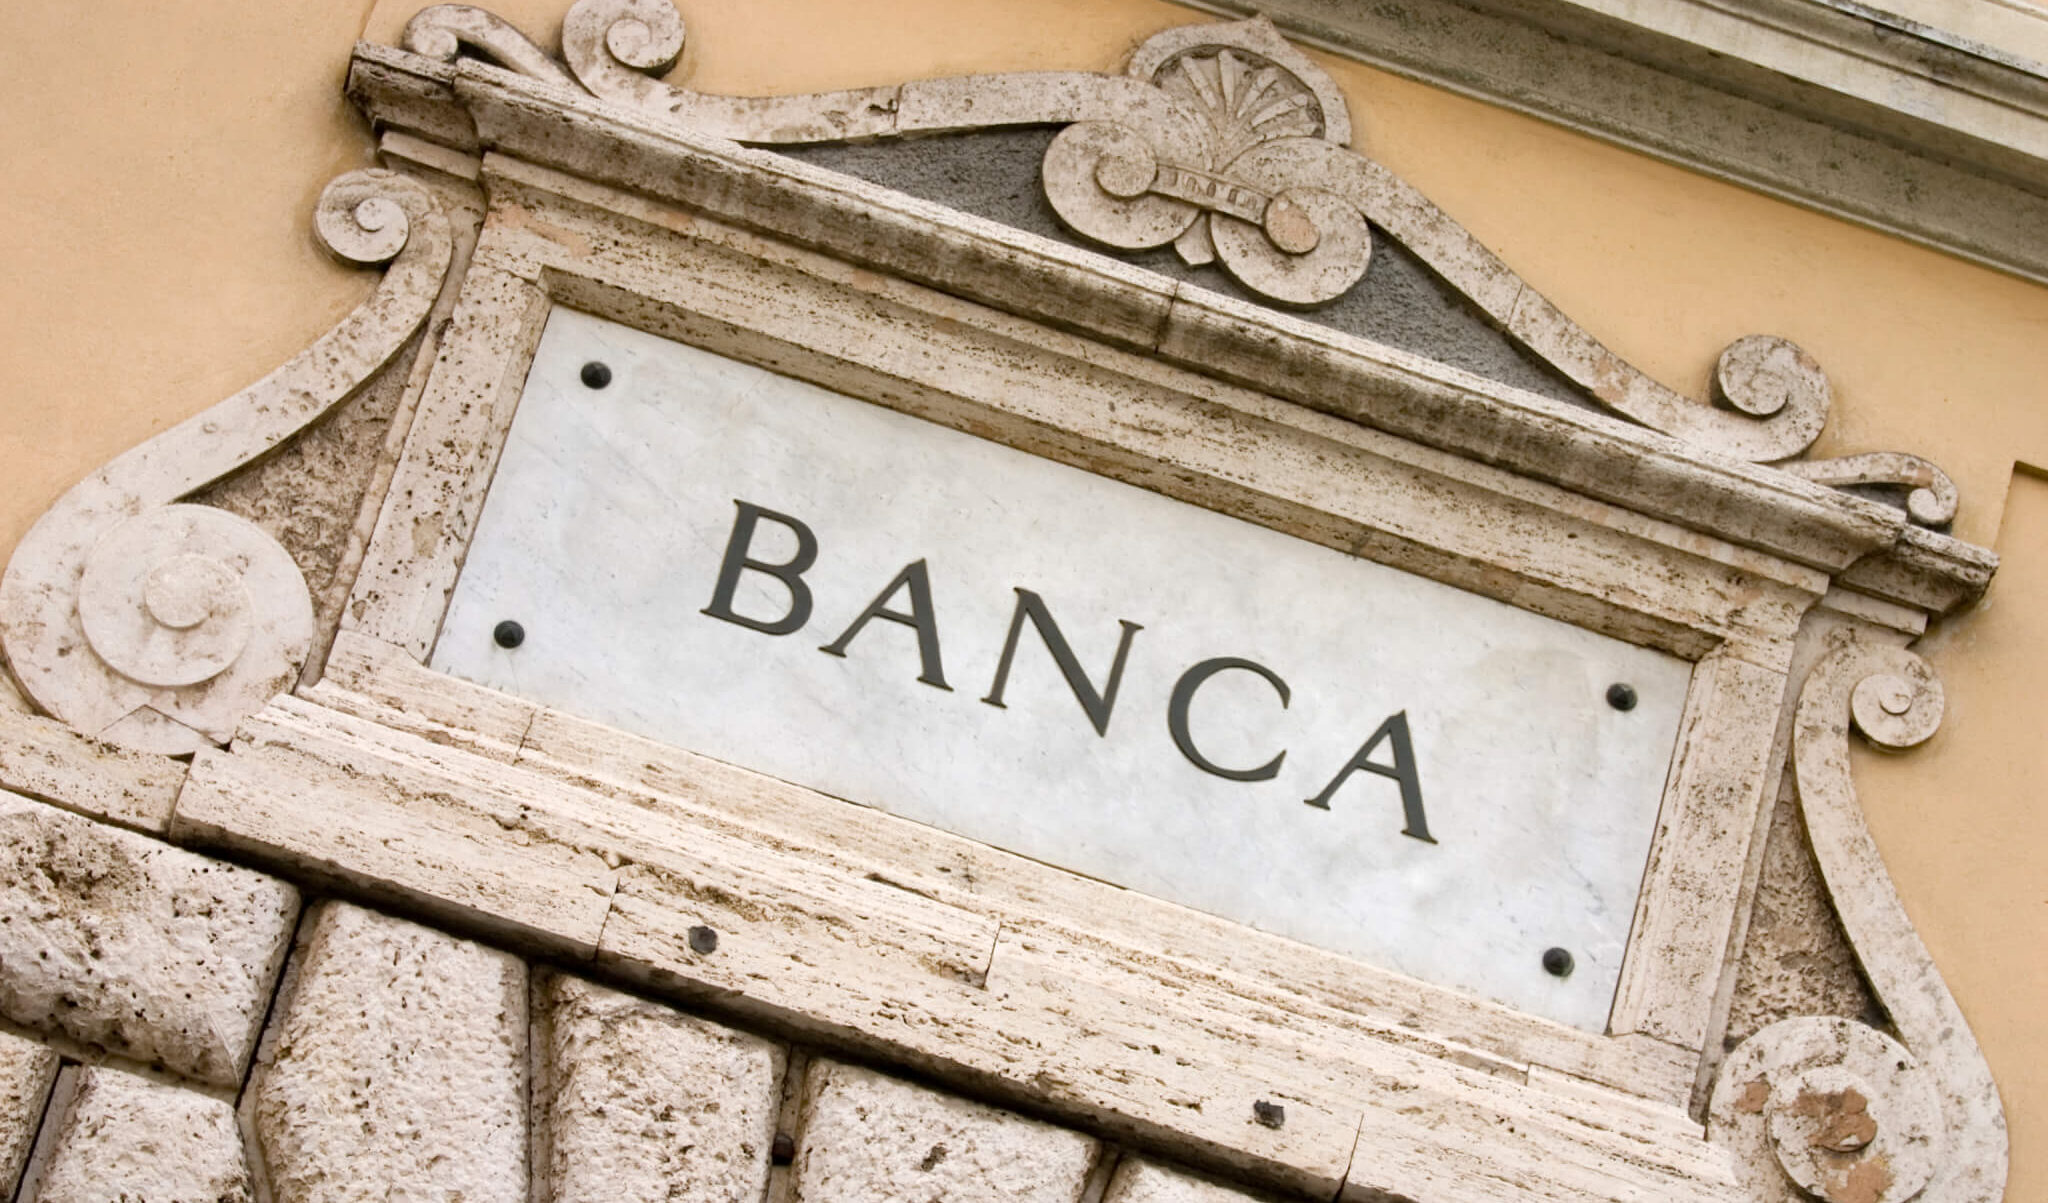 La propaganda Fdi danneggia le banche, il ministro Giorgetti che aspetta a intervenire?